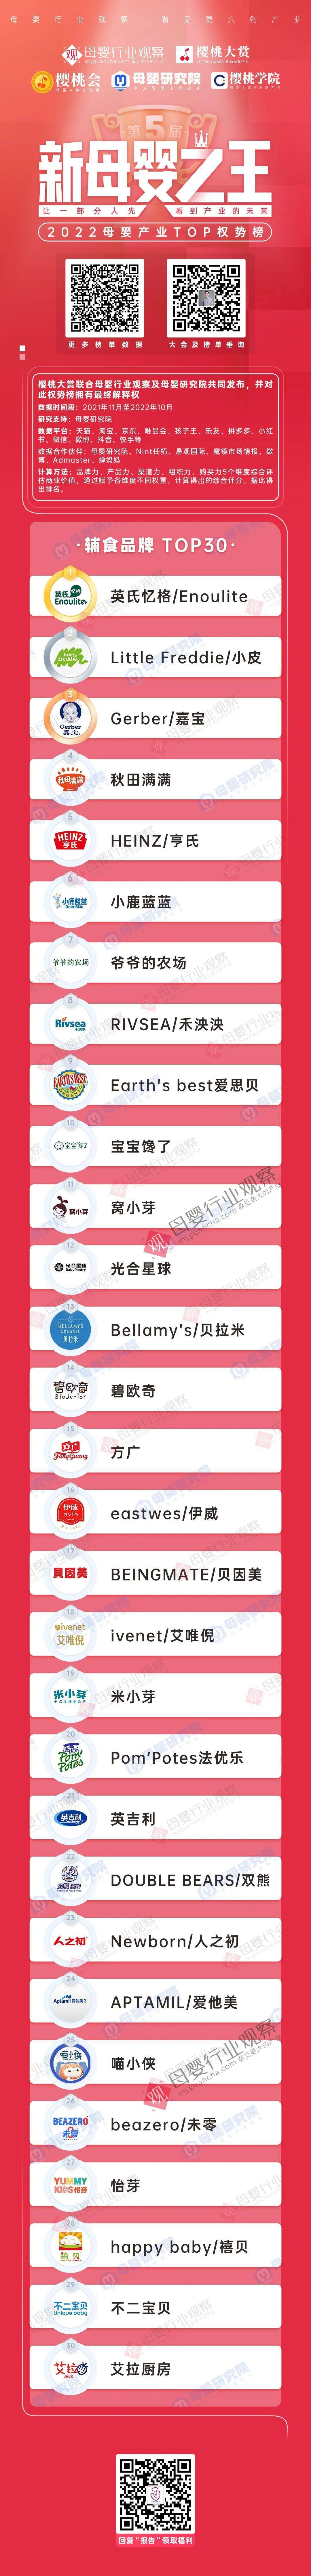 辅食机品牌排行榜_2015年中国婴儿辅食十大品牌排行榜